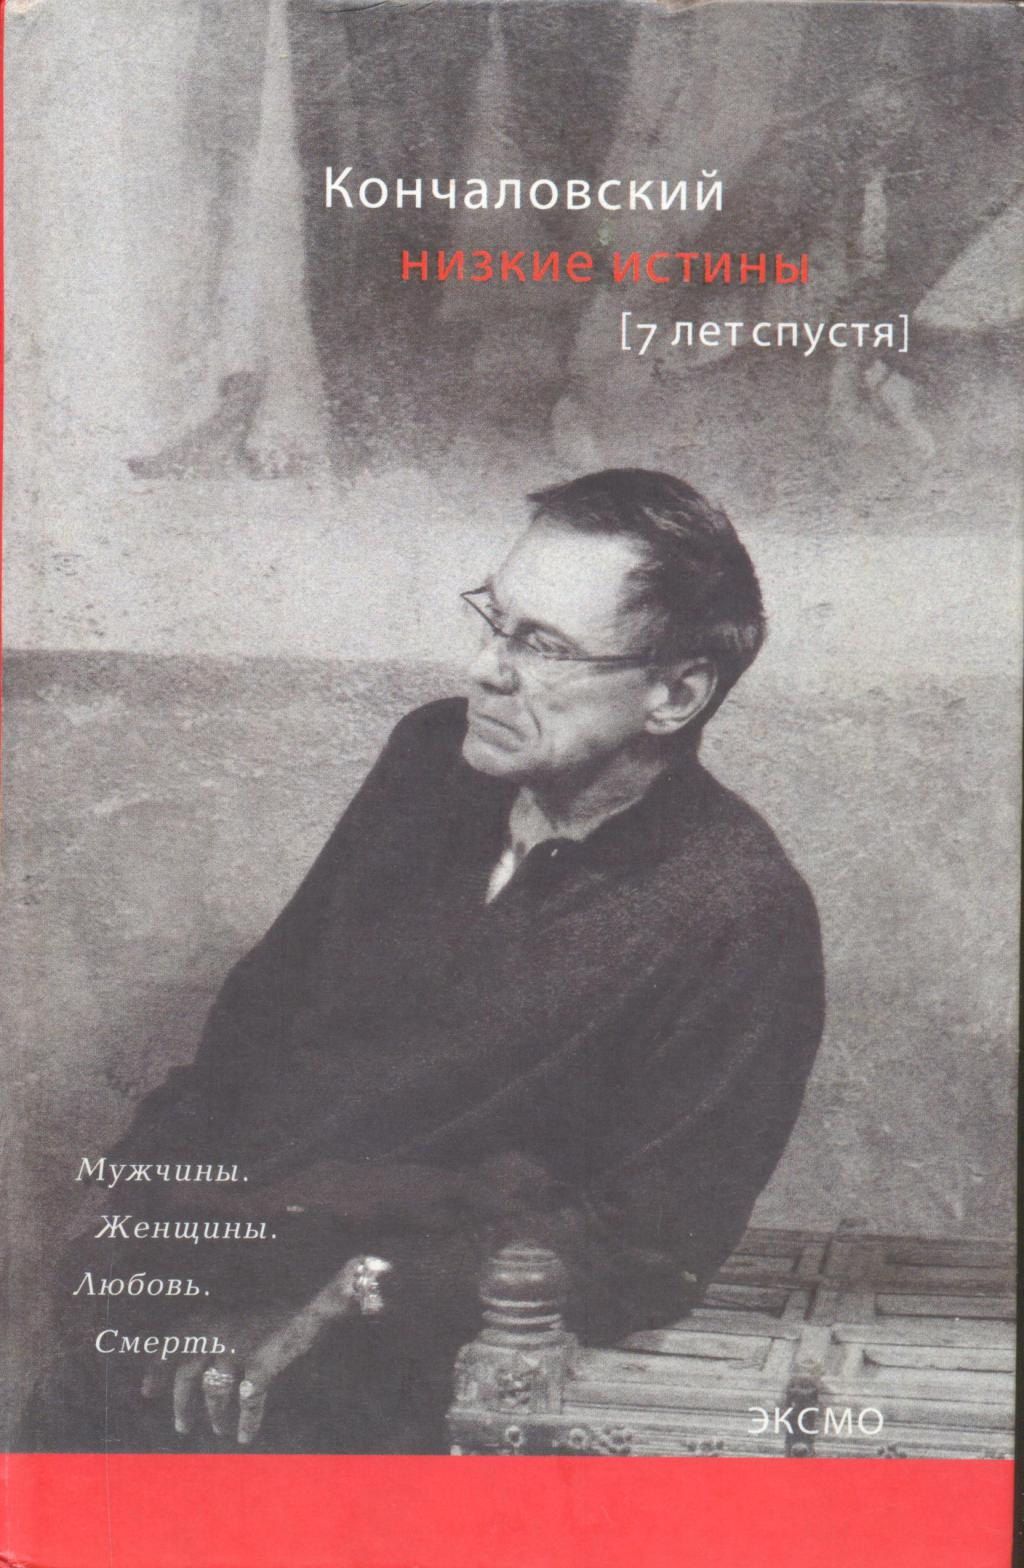 Книга Андрея Кончаловского «Низкие истины. Семь лет спустя», 1998&nbsp;г.